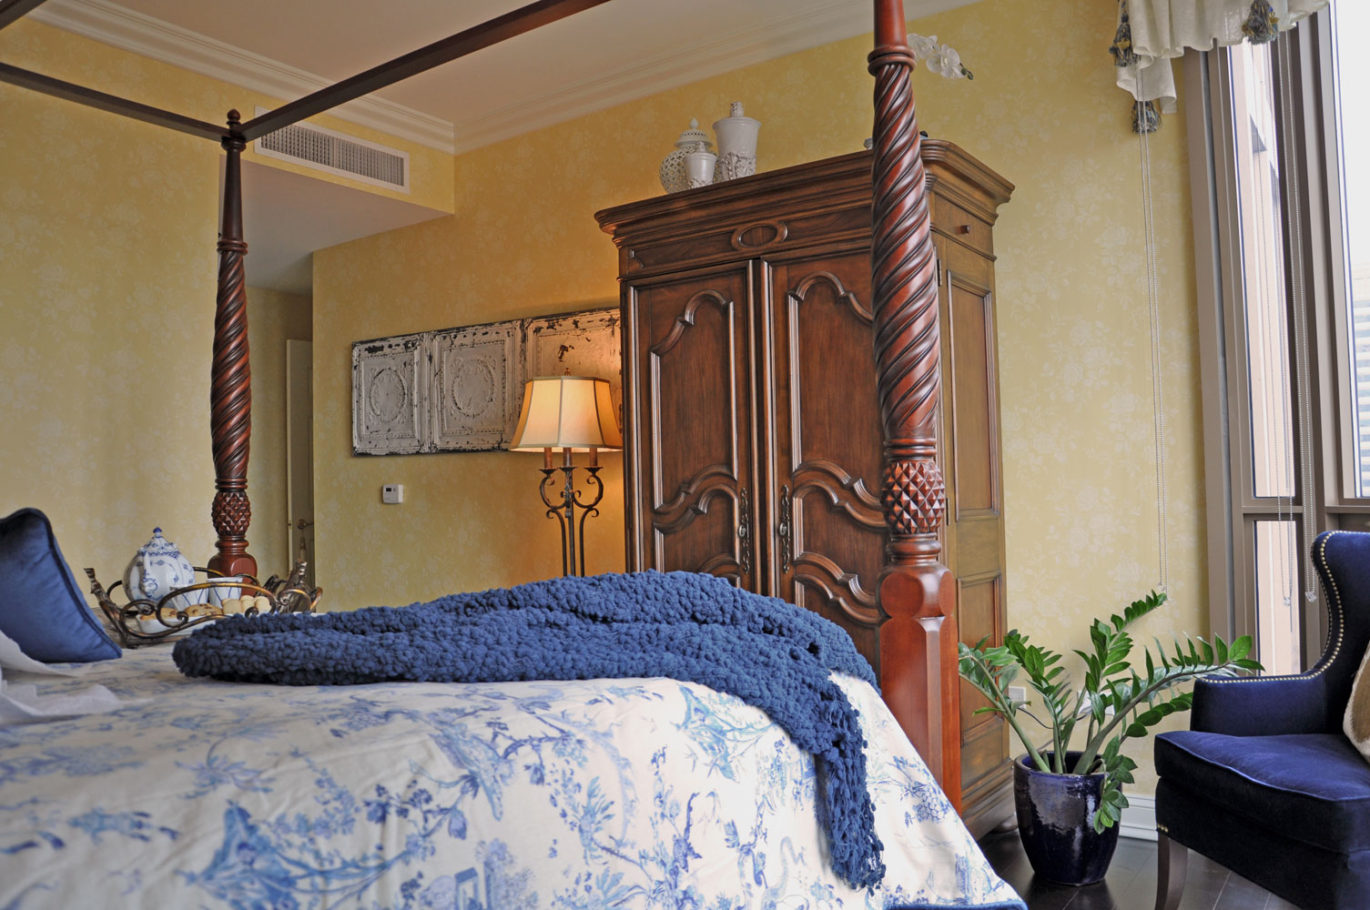 Pinnacle Bedroom by Talie Jane Interiors